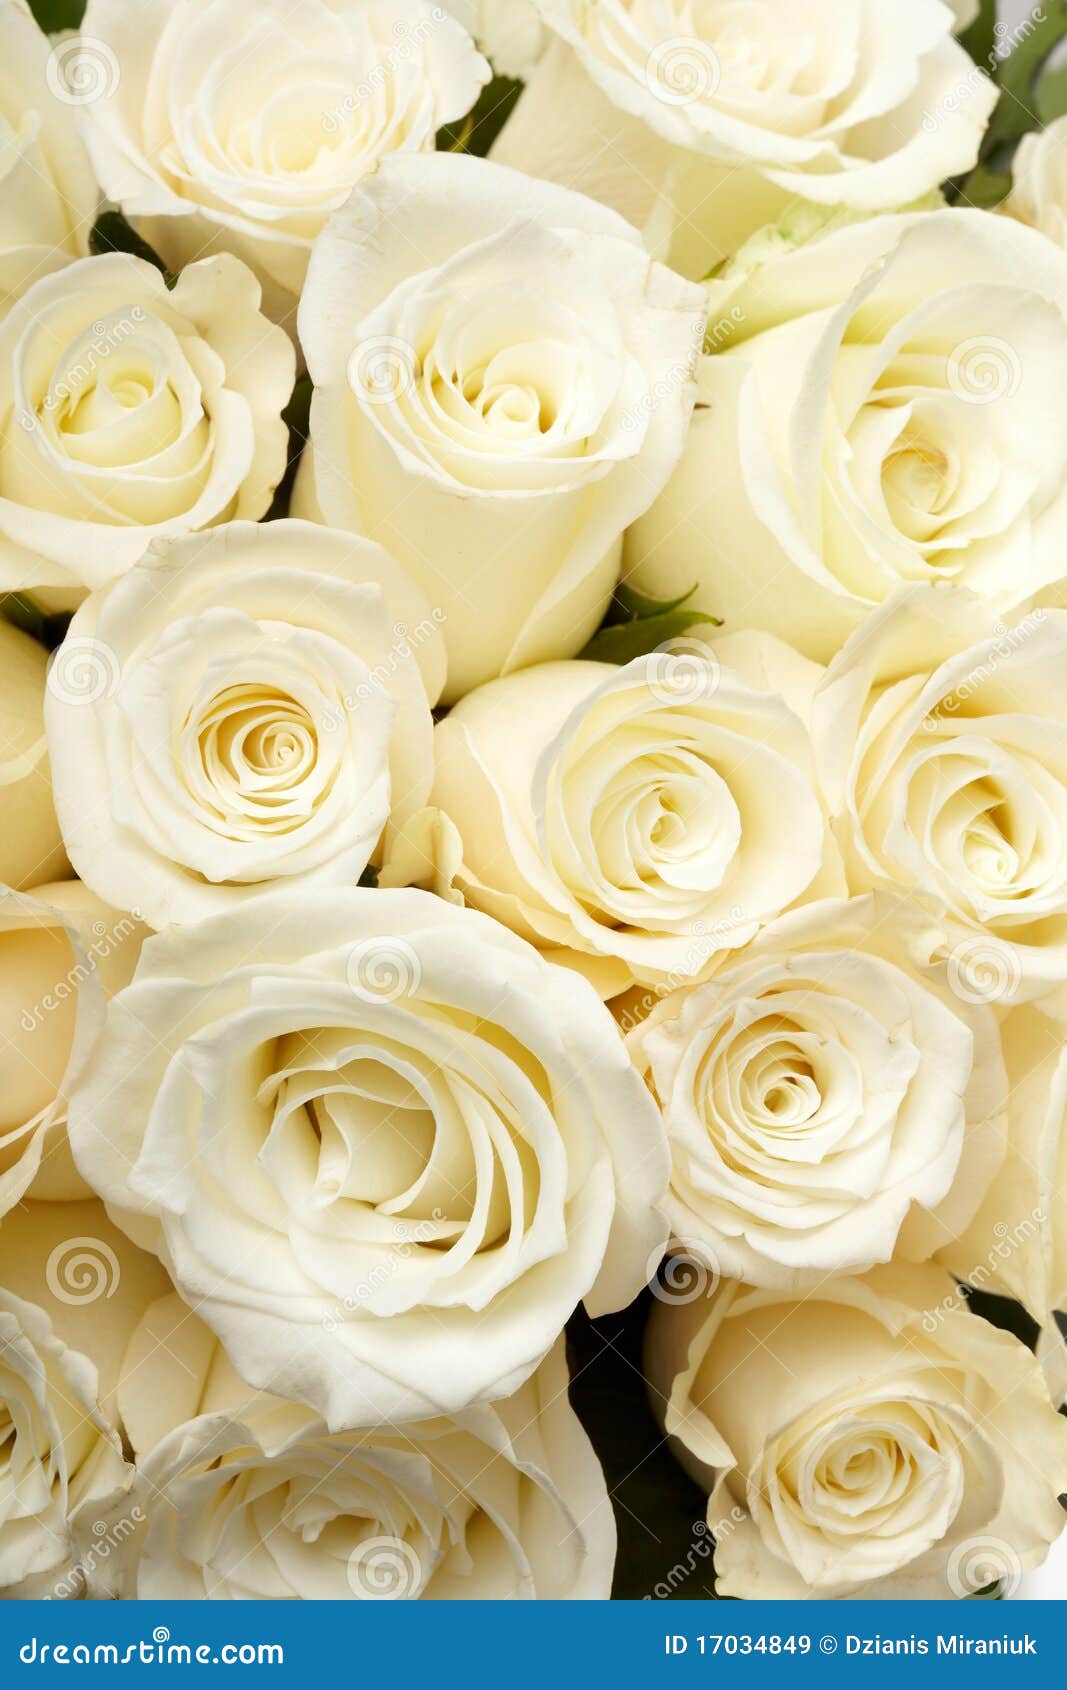 cream roses 17034849